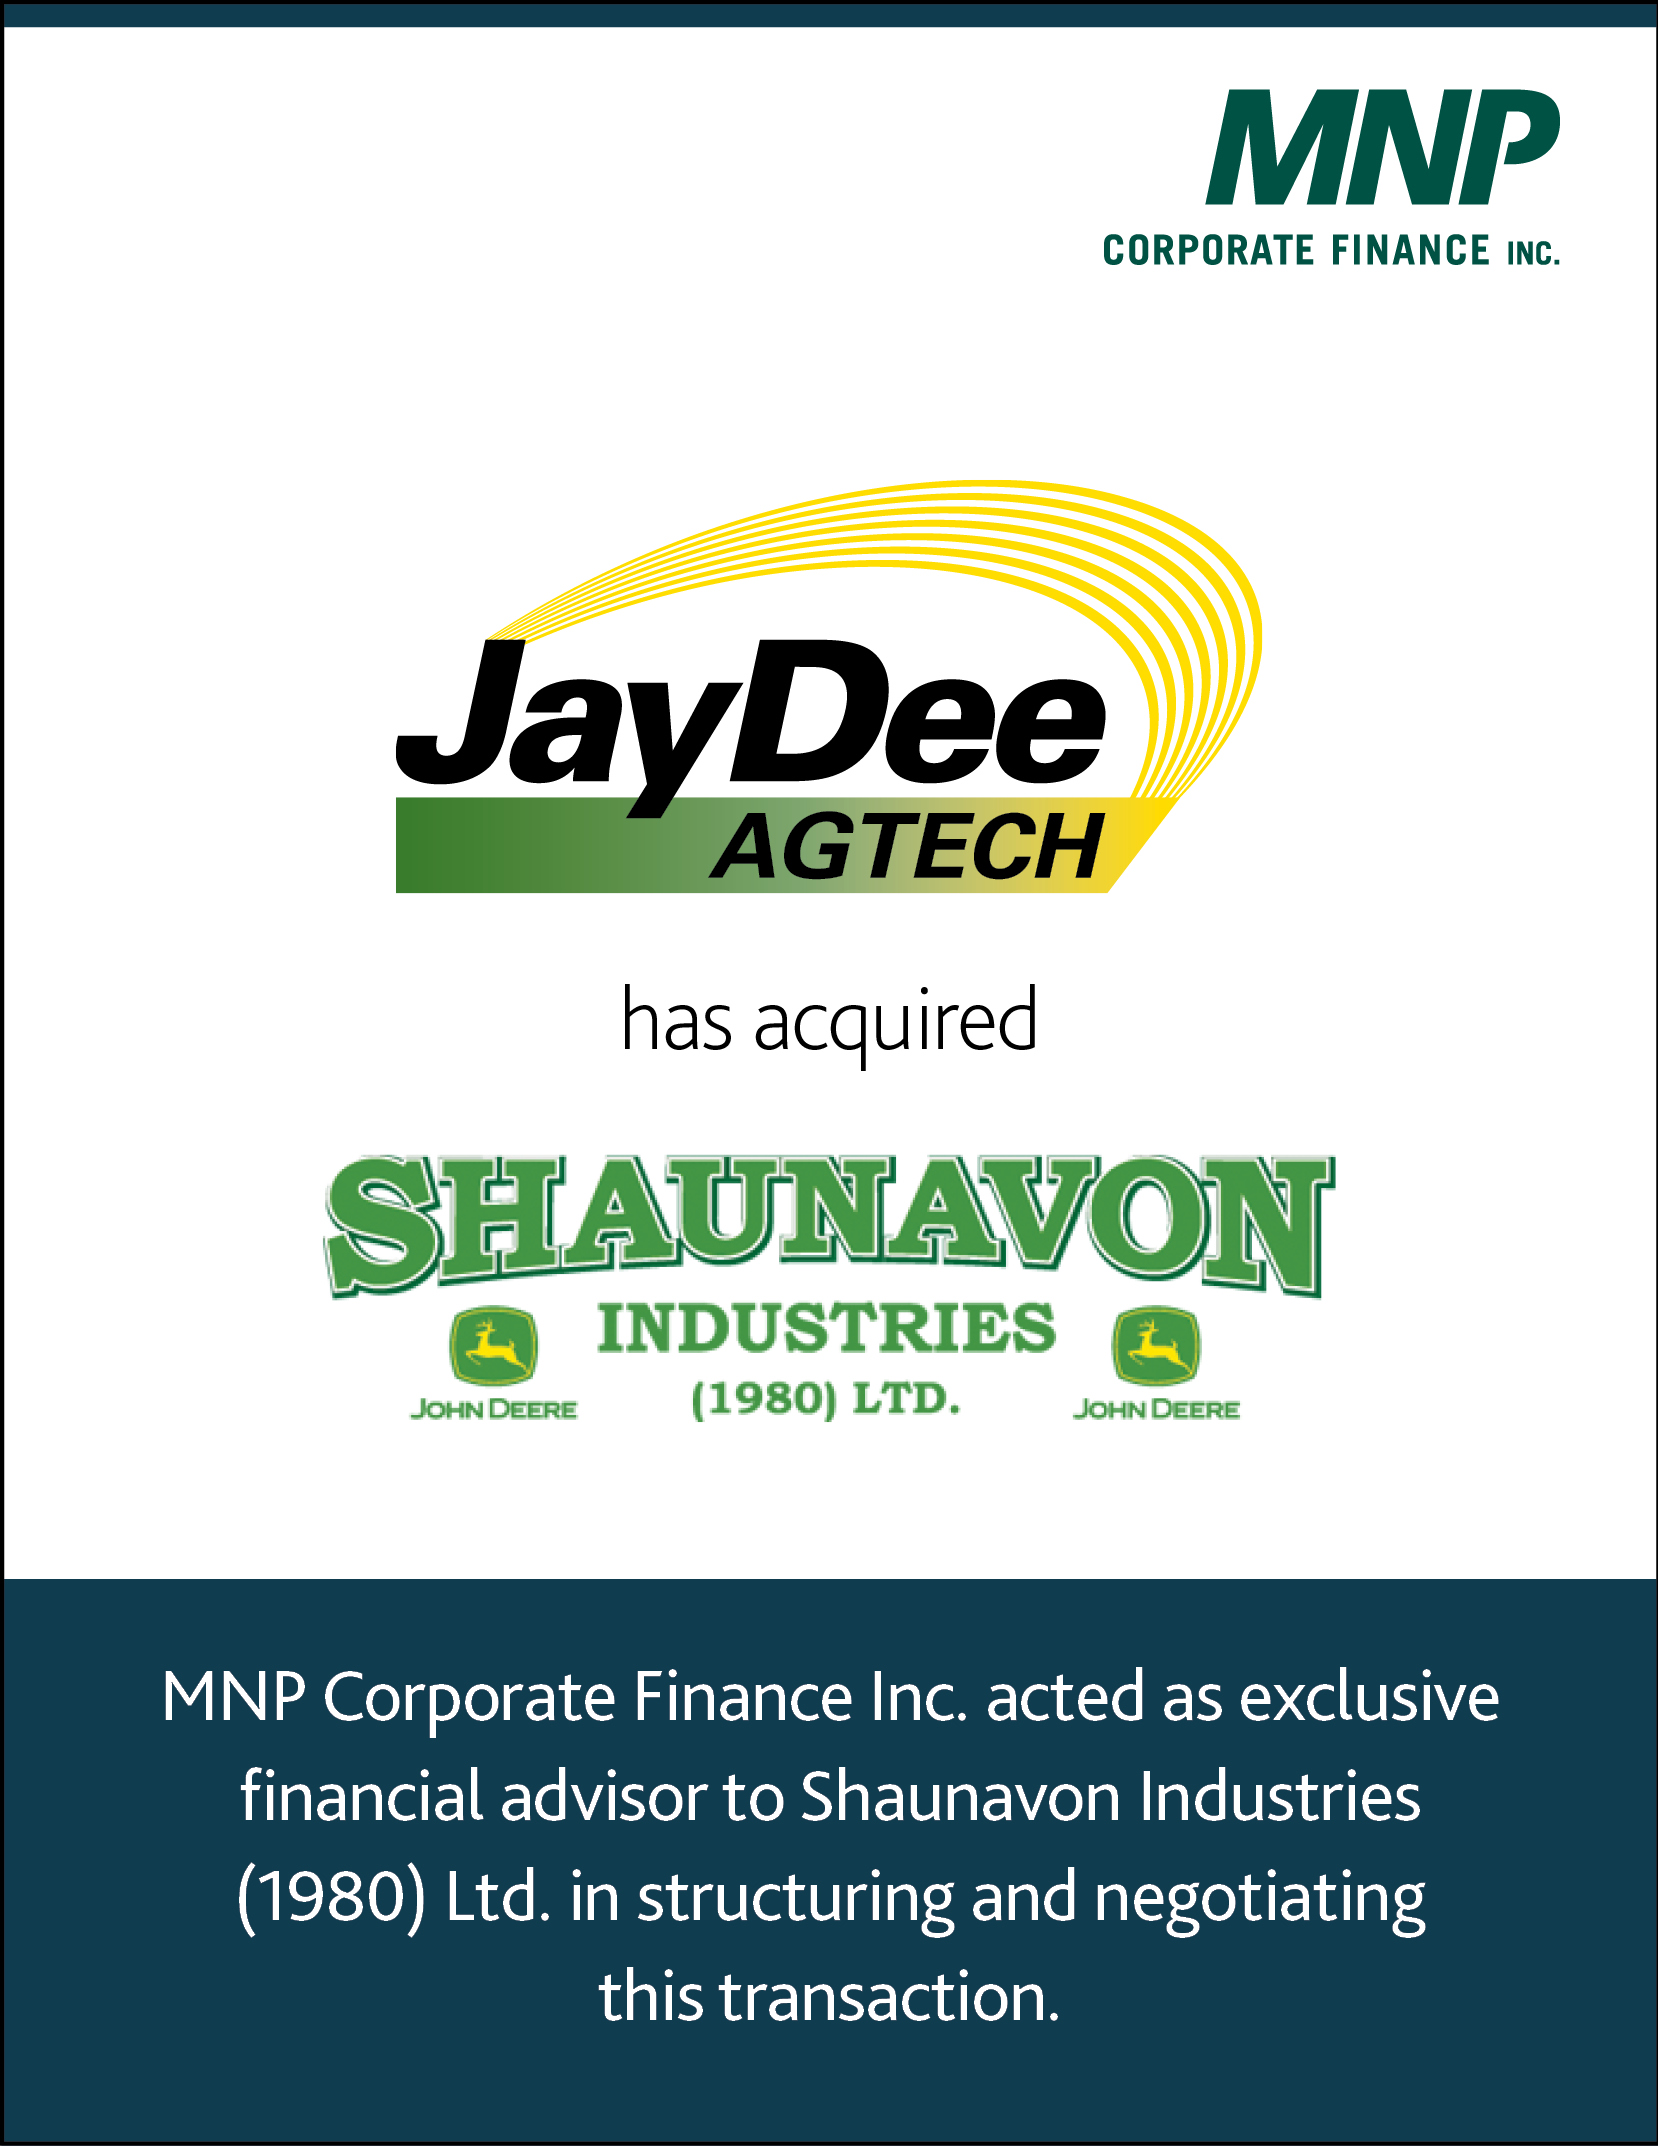 JayDee AgTech Ltd. has acquired Shaunavon Industries (1980) Ltd.